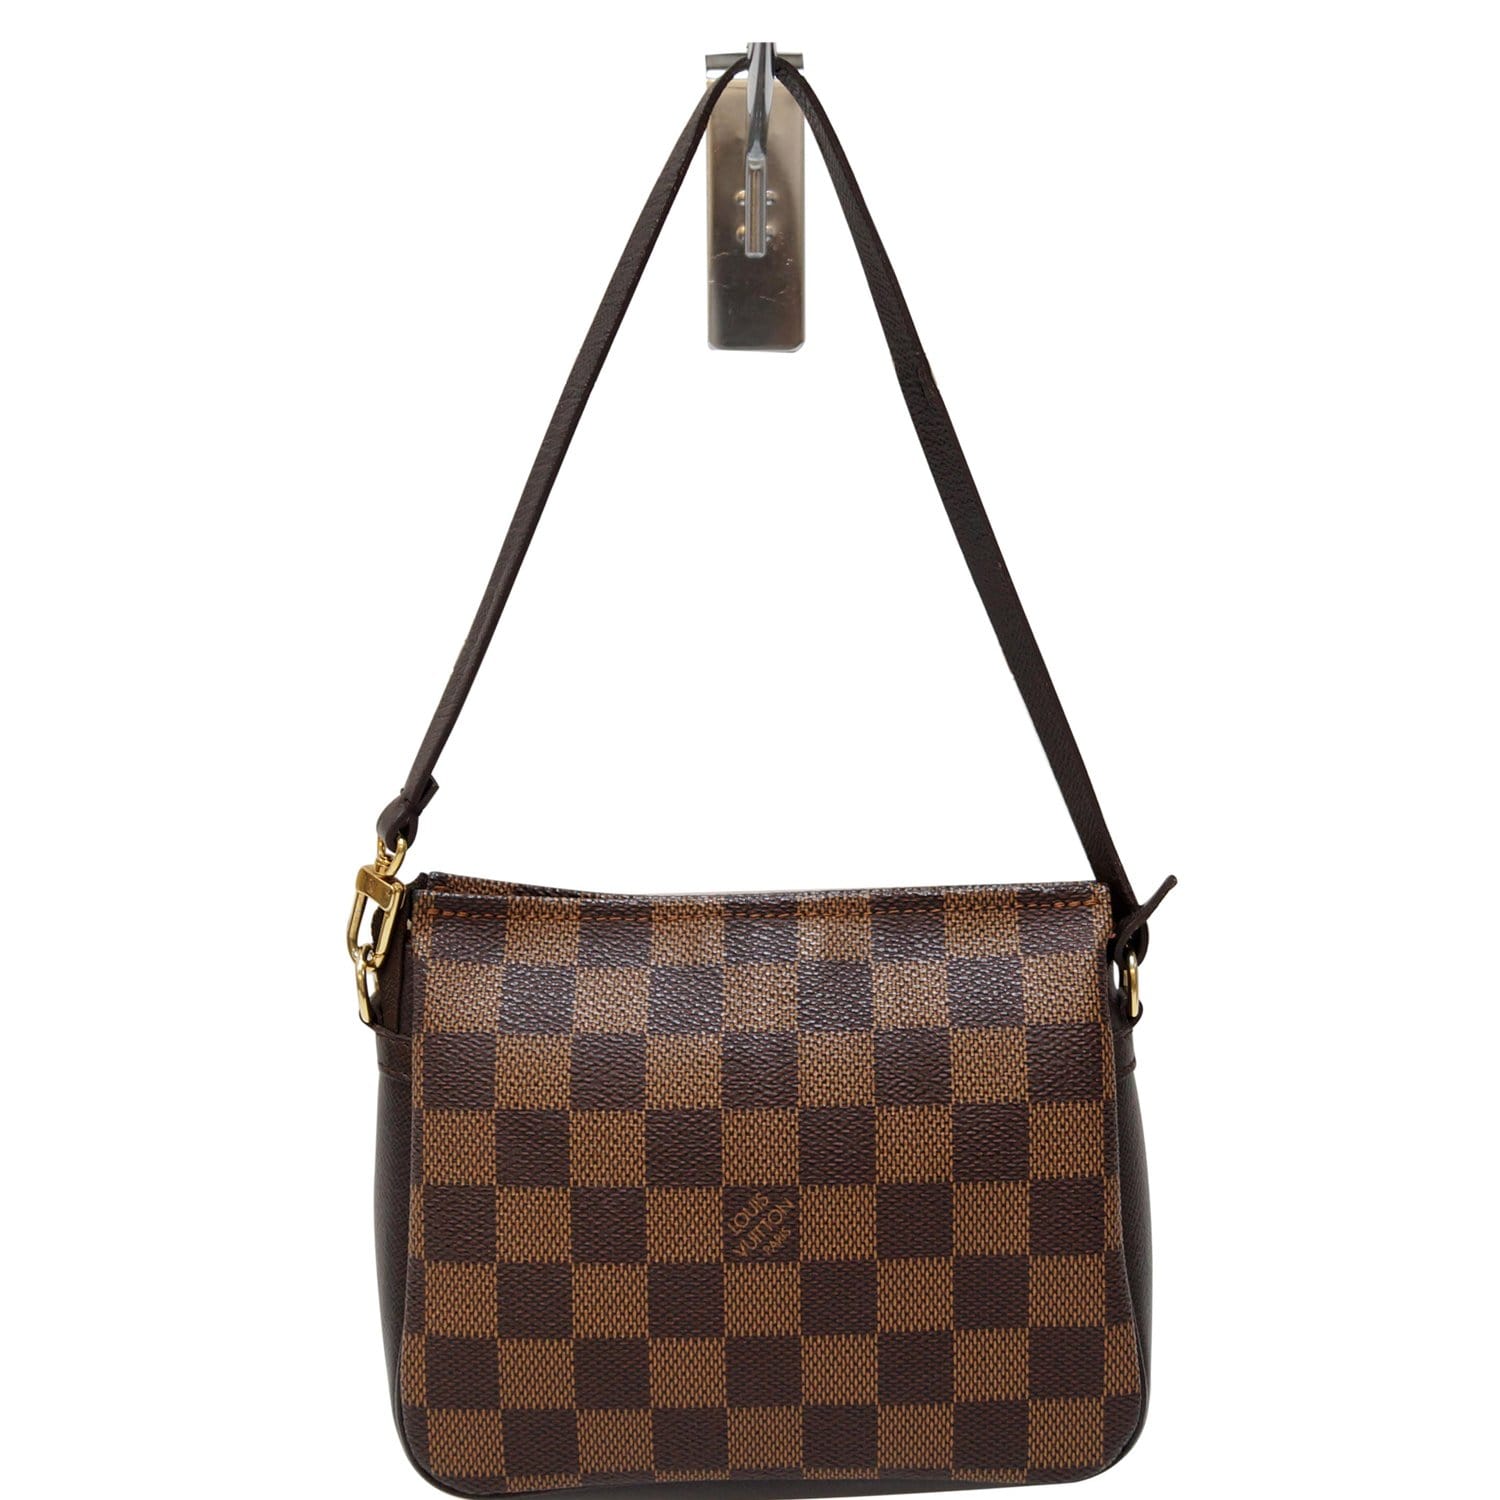 54 X18LOUISVUITTON Composite Bag For Women Makeup Bags Handbags  Shoulder Bag Men Purse Clutch Satchel Tote V2GA From Louis123fa, $18.6